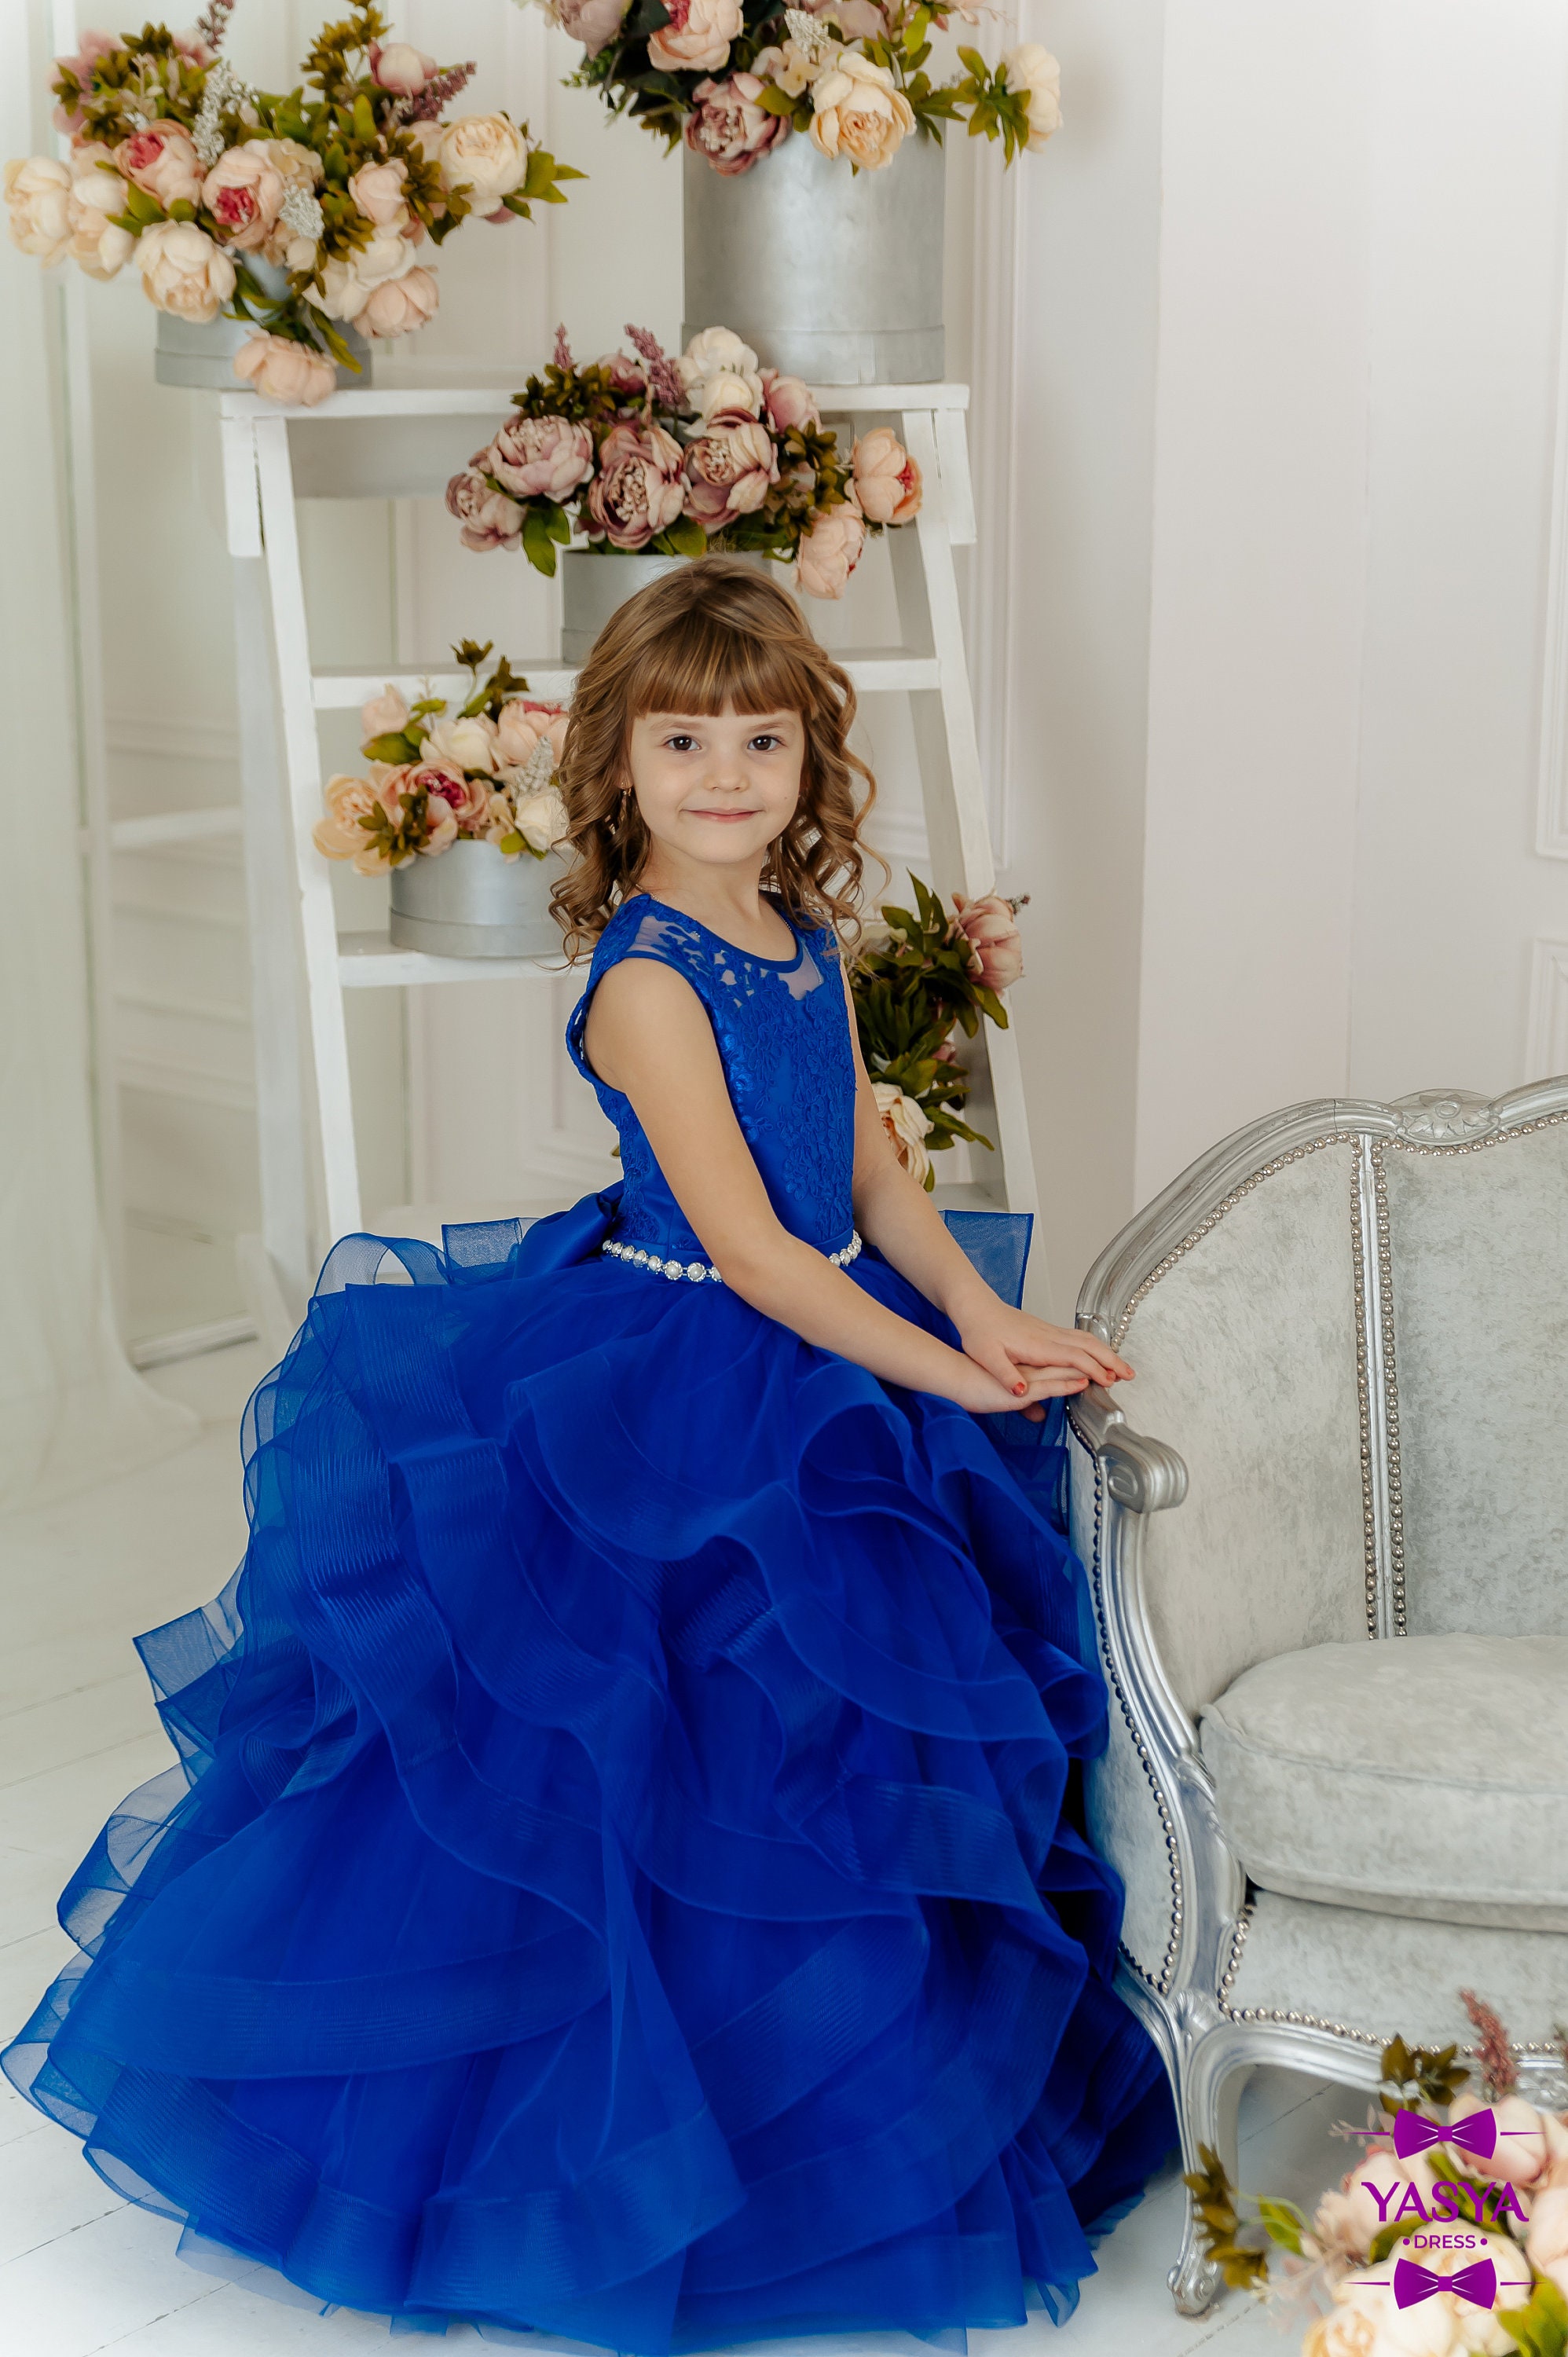 Royal Blue Flower Girl Dress Long Flower Tulle Gown for | Etsy